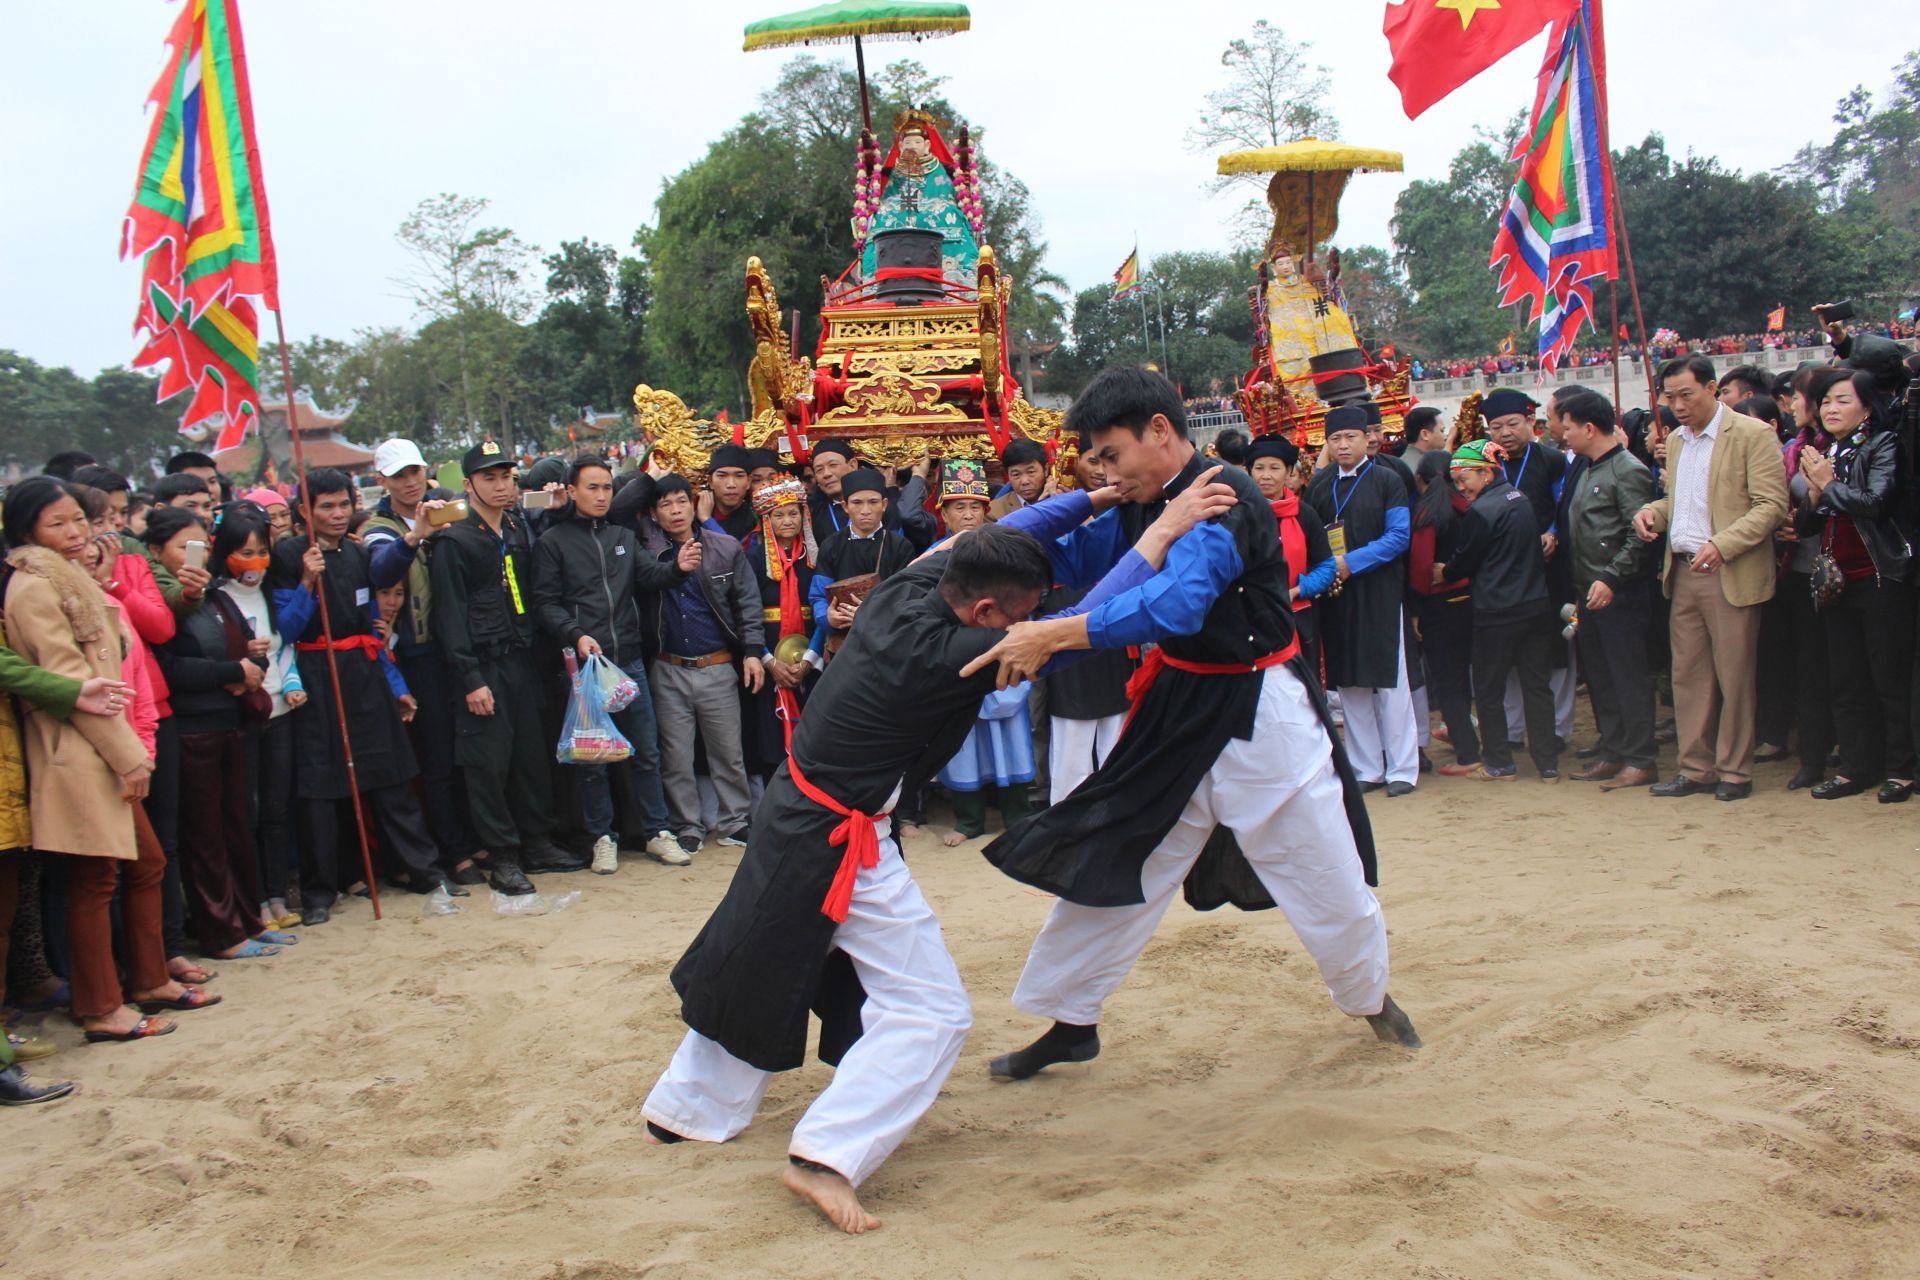 Vật hầu- Một nghi lễ trong lễ rước Mẫu sang sông tại lễ hội Đền Đông Cuông